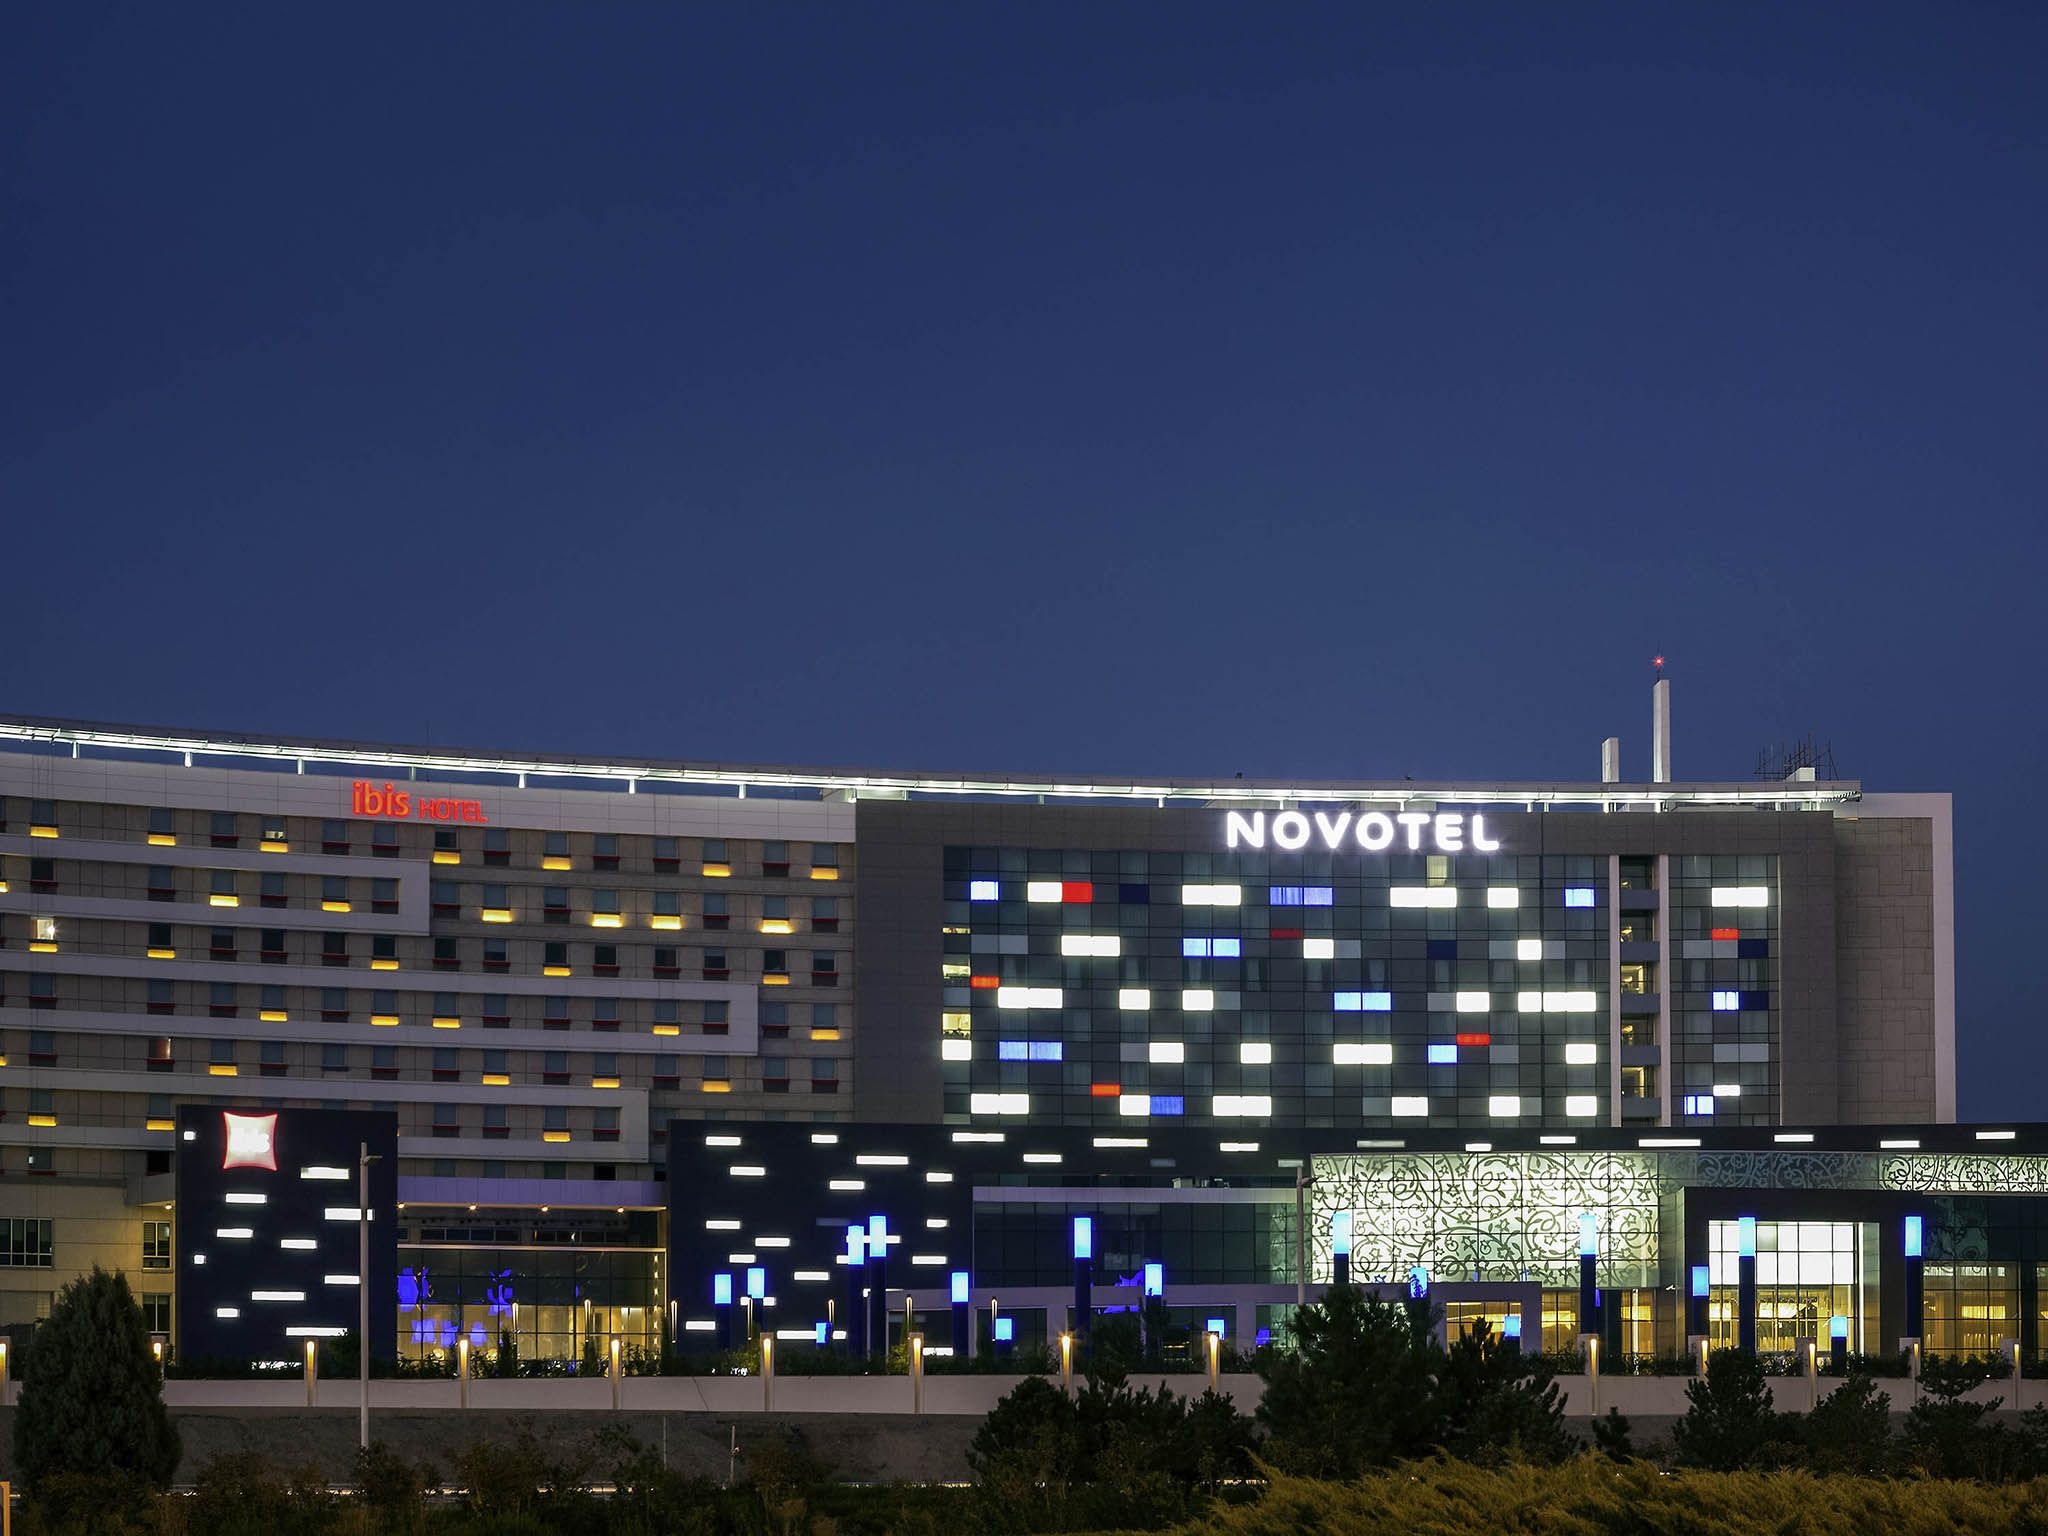 هتل نووتل تهران